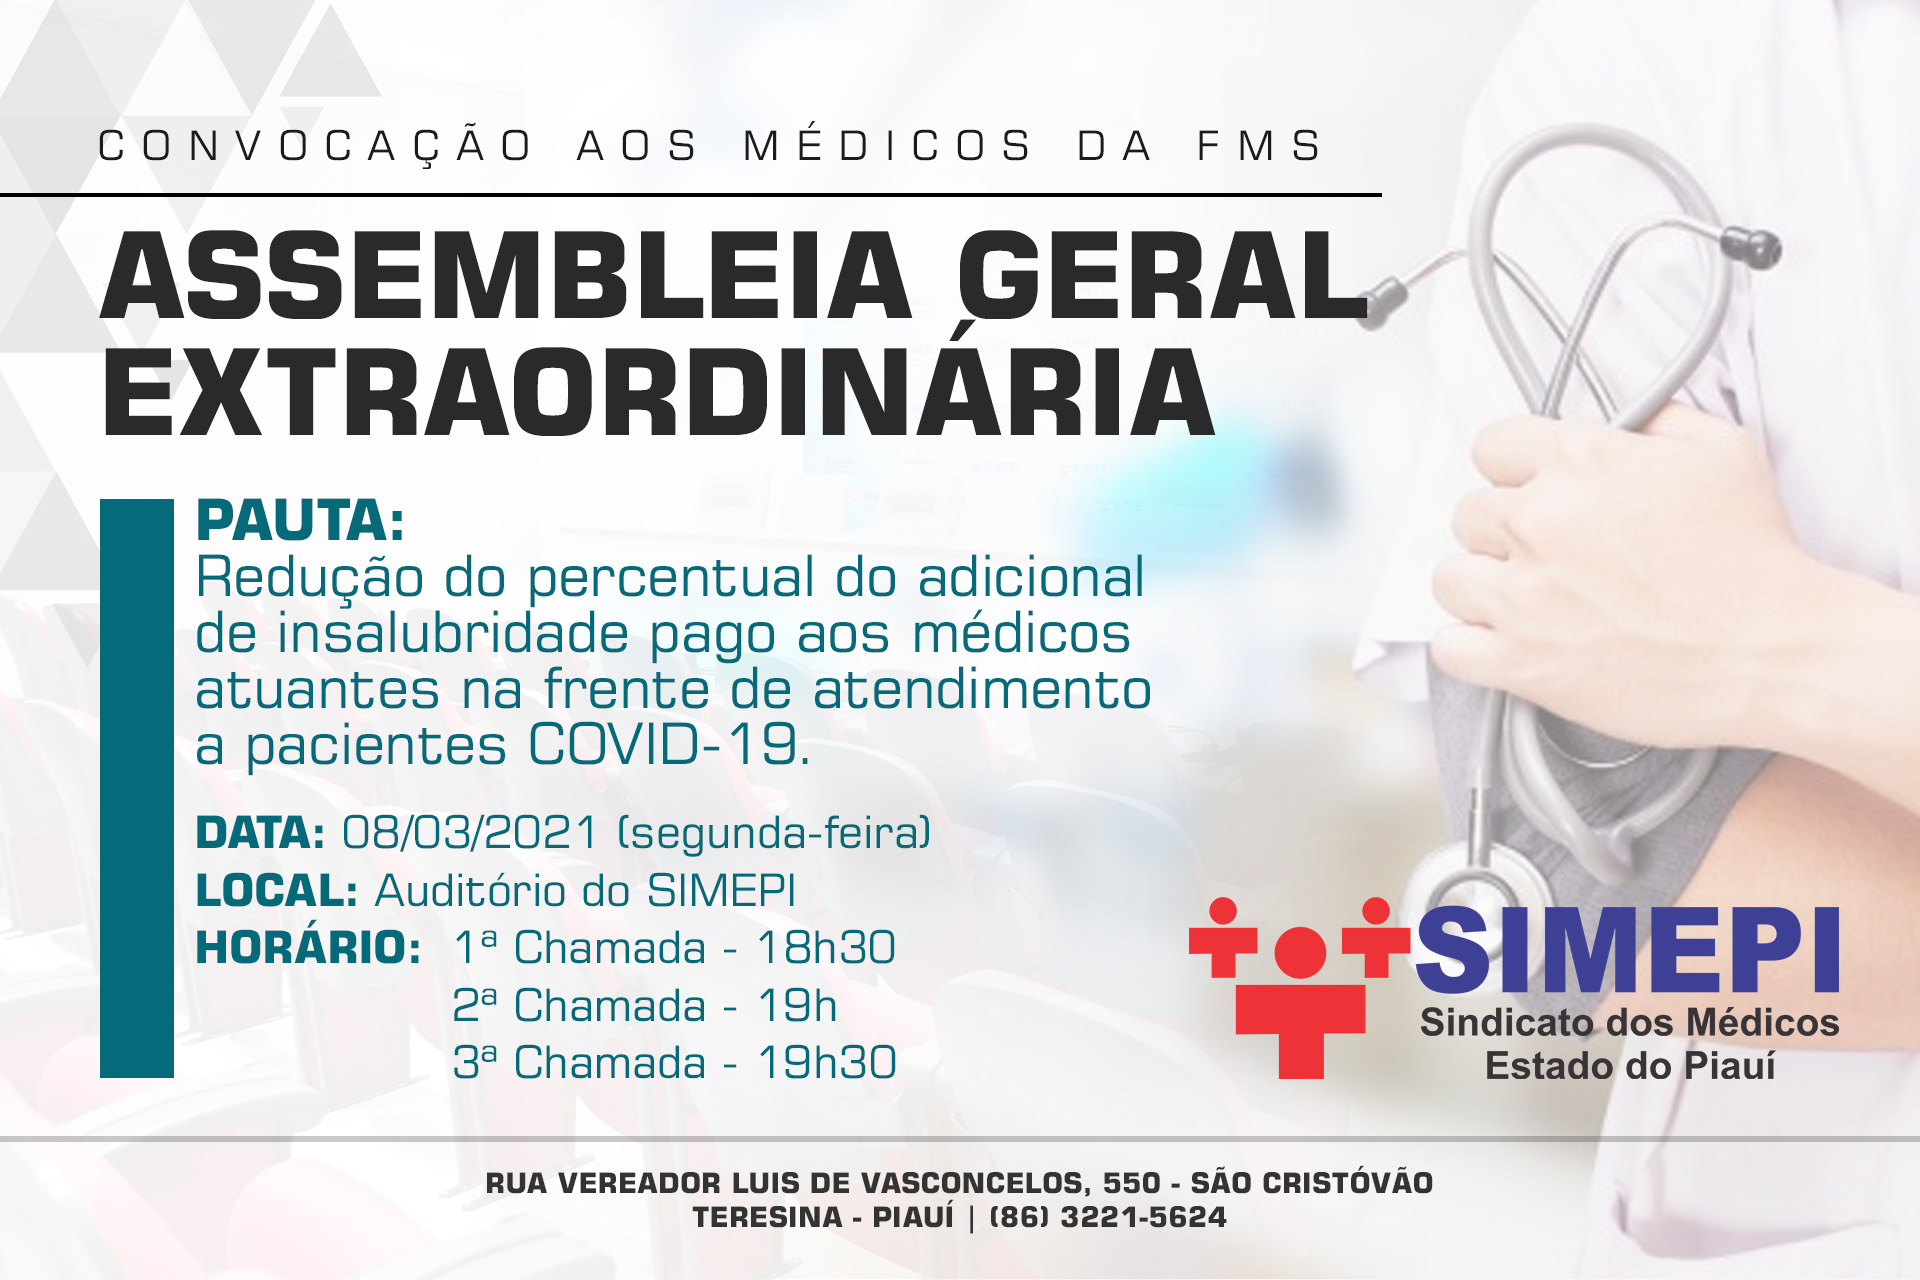 Convocação aos médicos servidores do município de Teresina